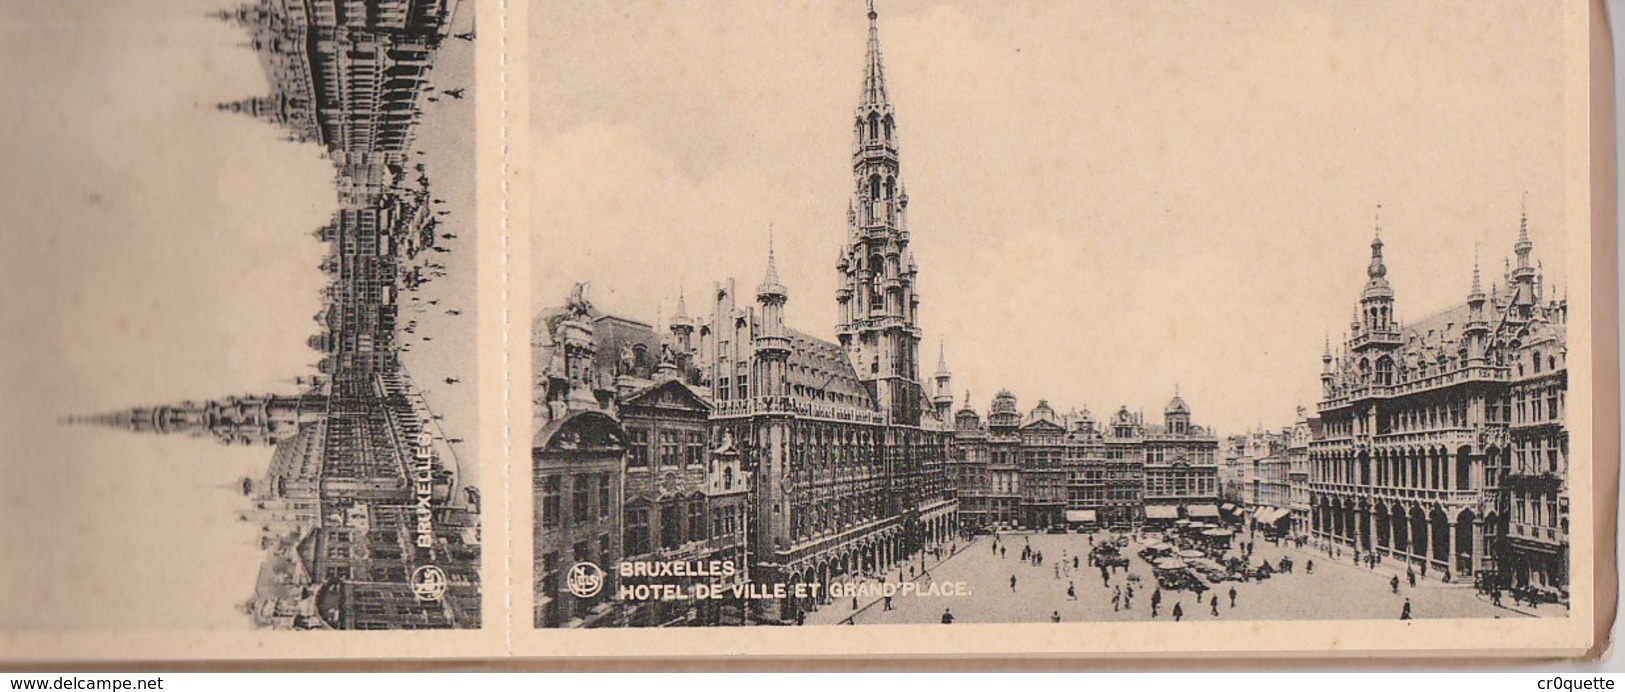 BELGIQUE BRUXELLES BRUSSELS - LOT DE 12 VIEILLES CARTES POSTALES  Vers 1920 - Loten, Series, Verzamelingen